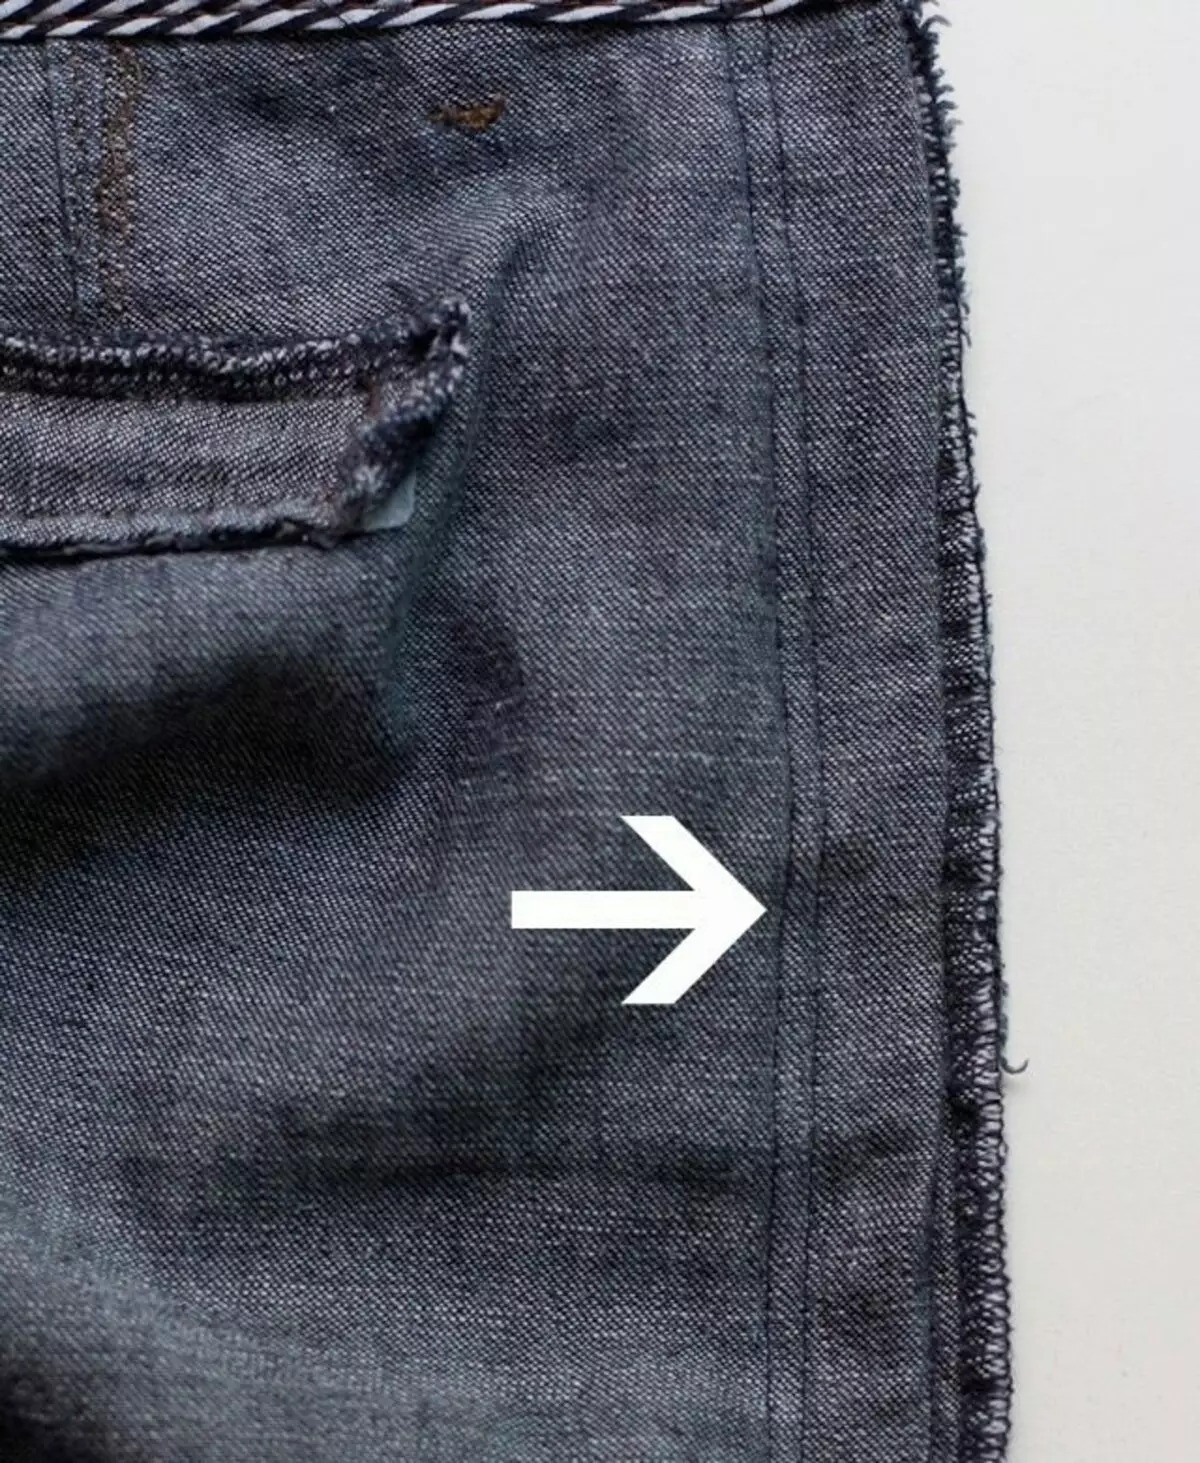 Meriv çawa li ser pêlê jeans xwar bike an jî mezinek çêbikin: Meriv çawa di hipsê de kêm bike 15584_29